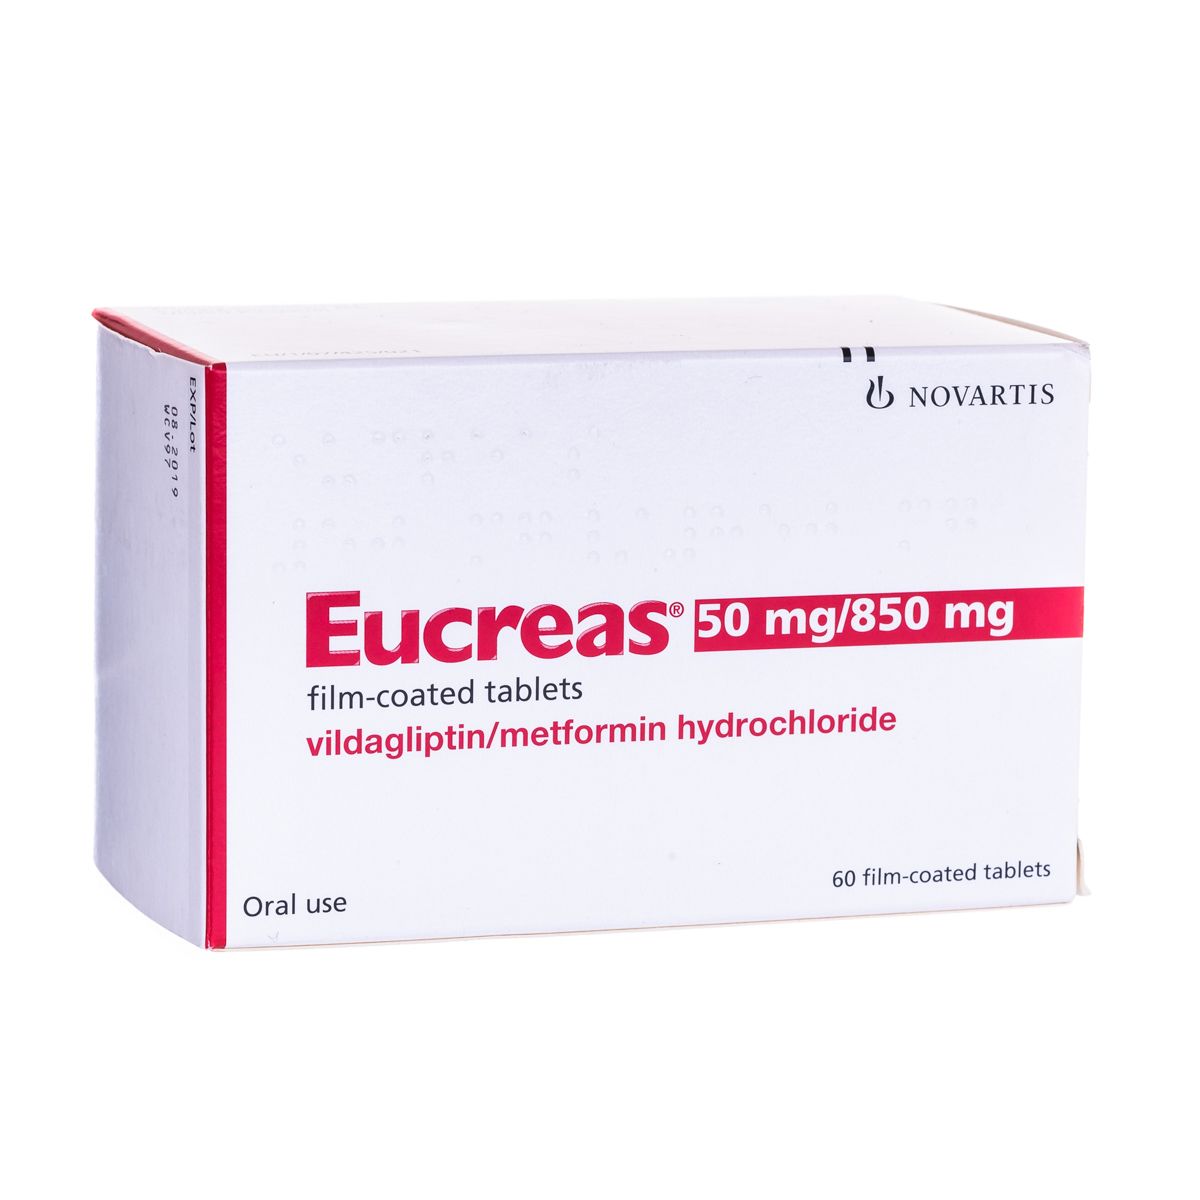 Eucreas - Pharmacy Office